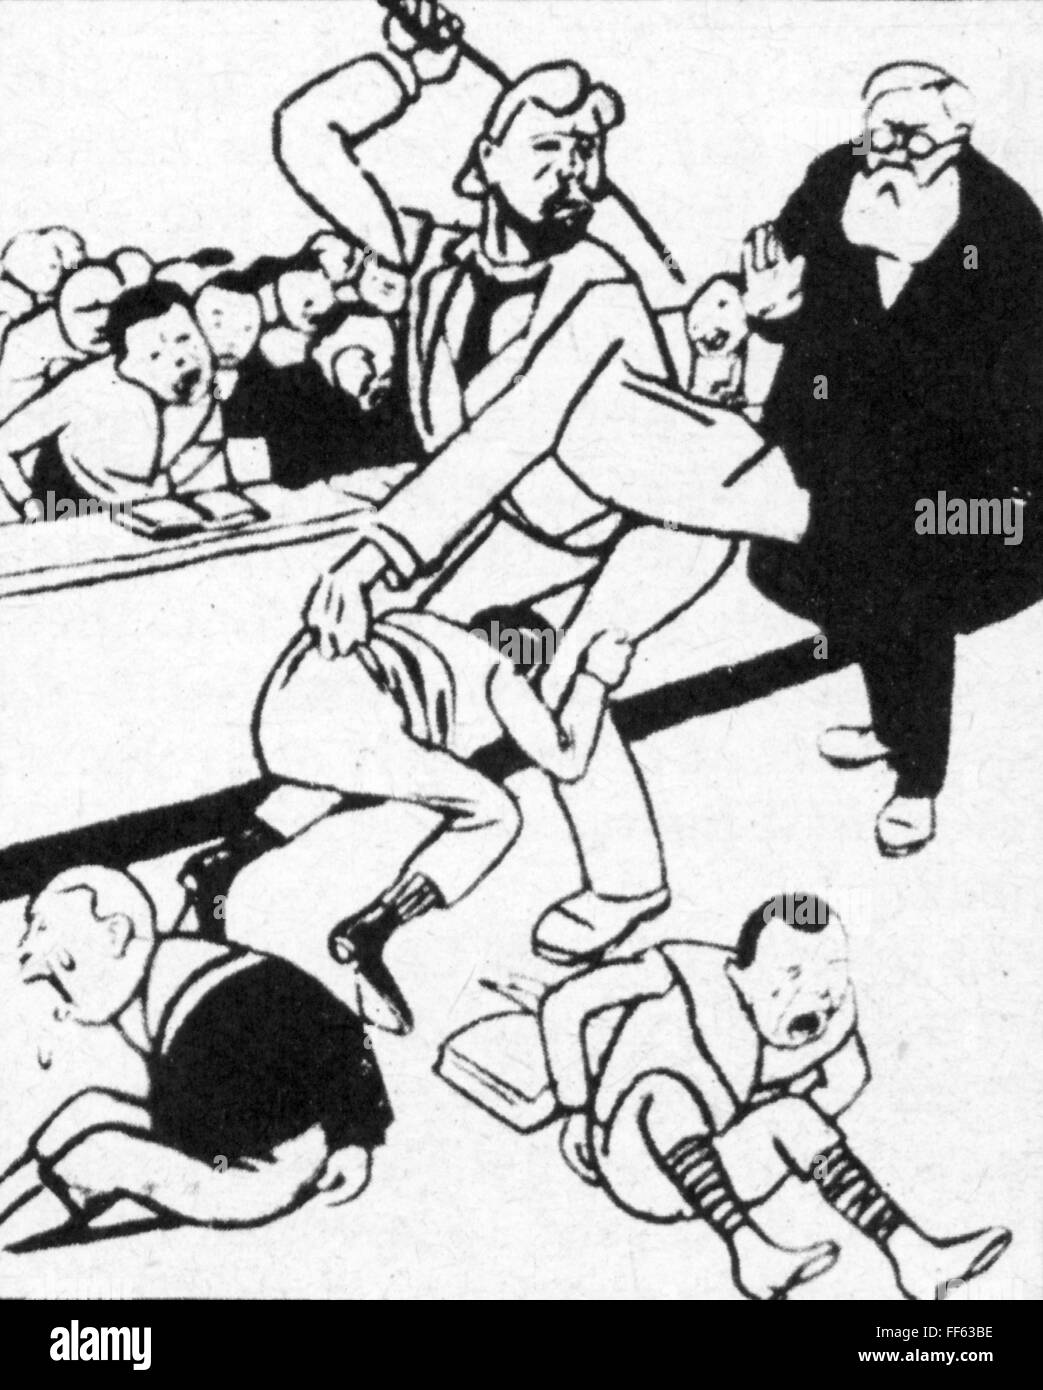 Pedagogía, caricatura, fustigation en una escuela prusiana, dibujo, fuera de un periódico de la clase obrera, 1905, Derechos adicionales-Clearences-no disponible Foto de stock